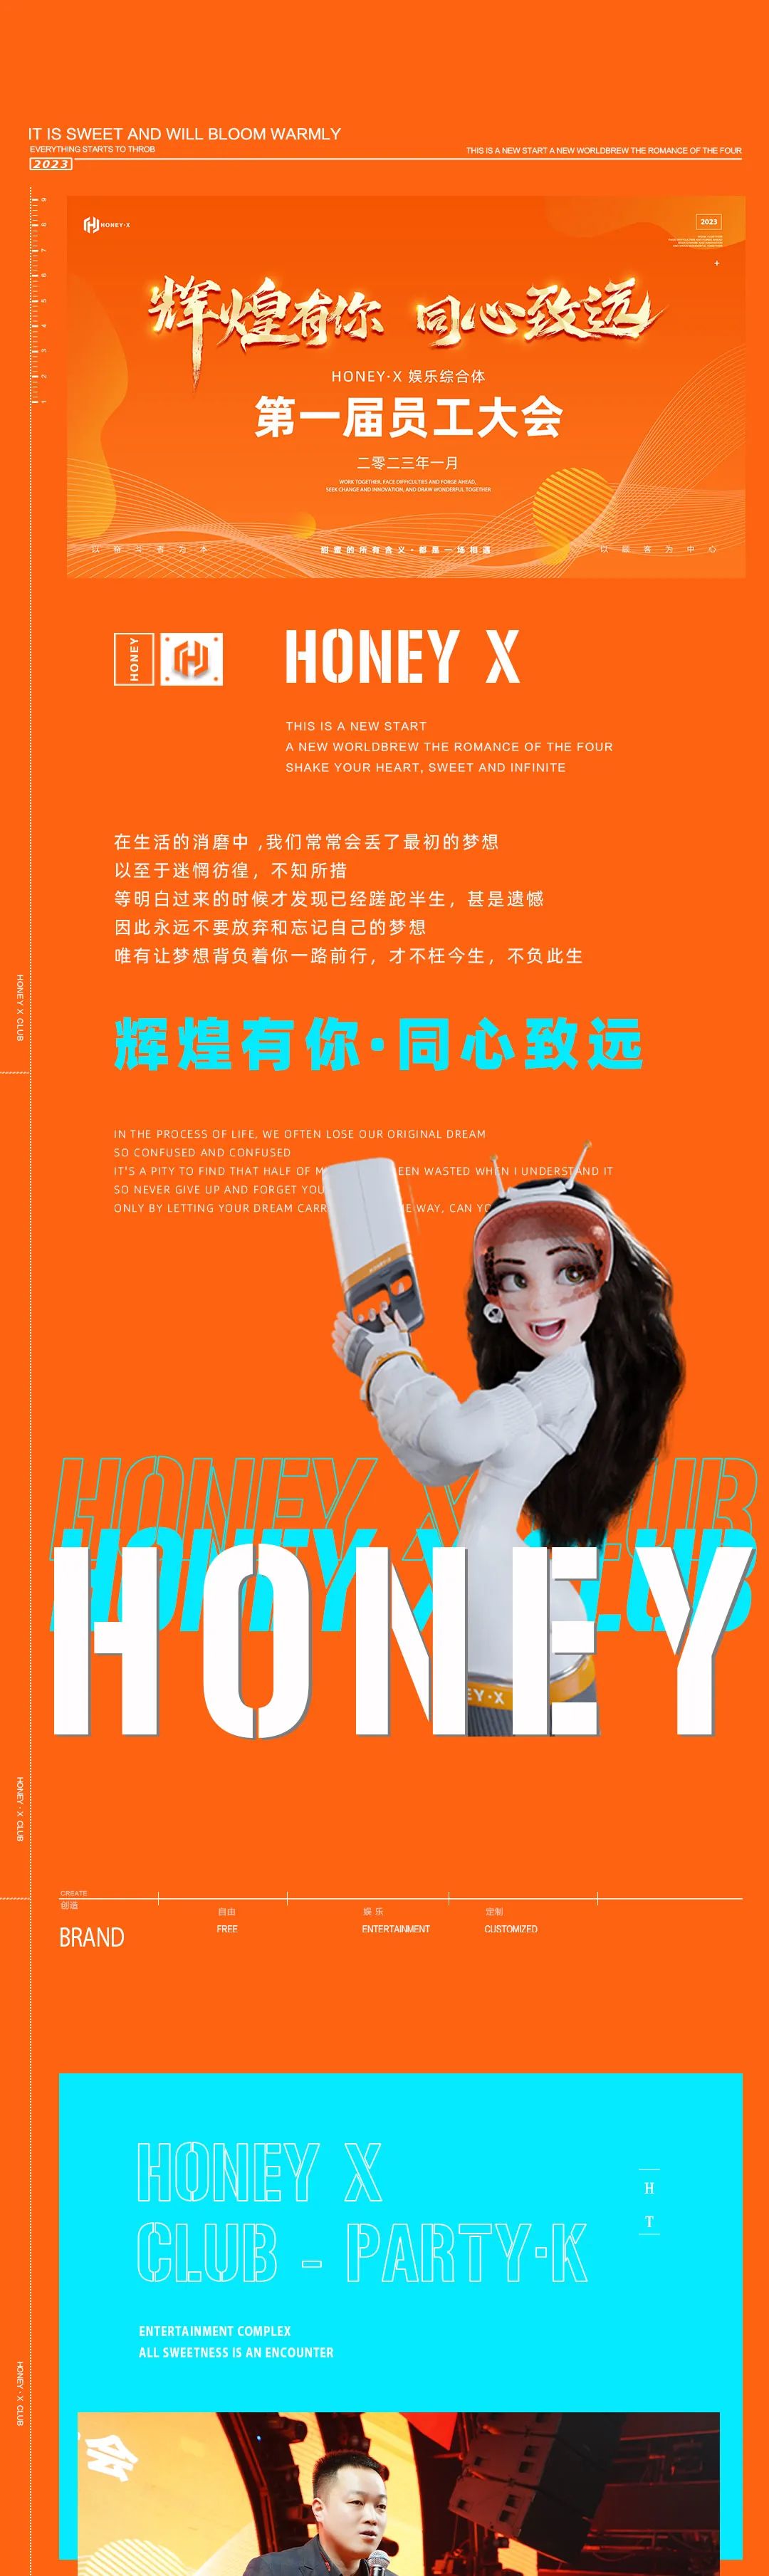 𝐇𝐎𝐍𝐄𝐘·𝐗 娱乐综合体 | 第一届员工大会《辉煌有你·同心致远》-亳州HONEY X CLUB